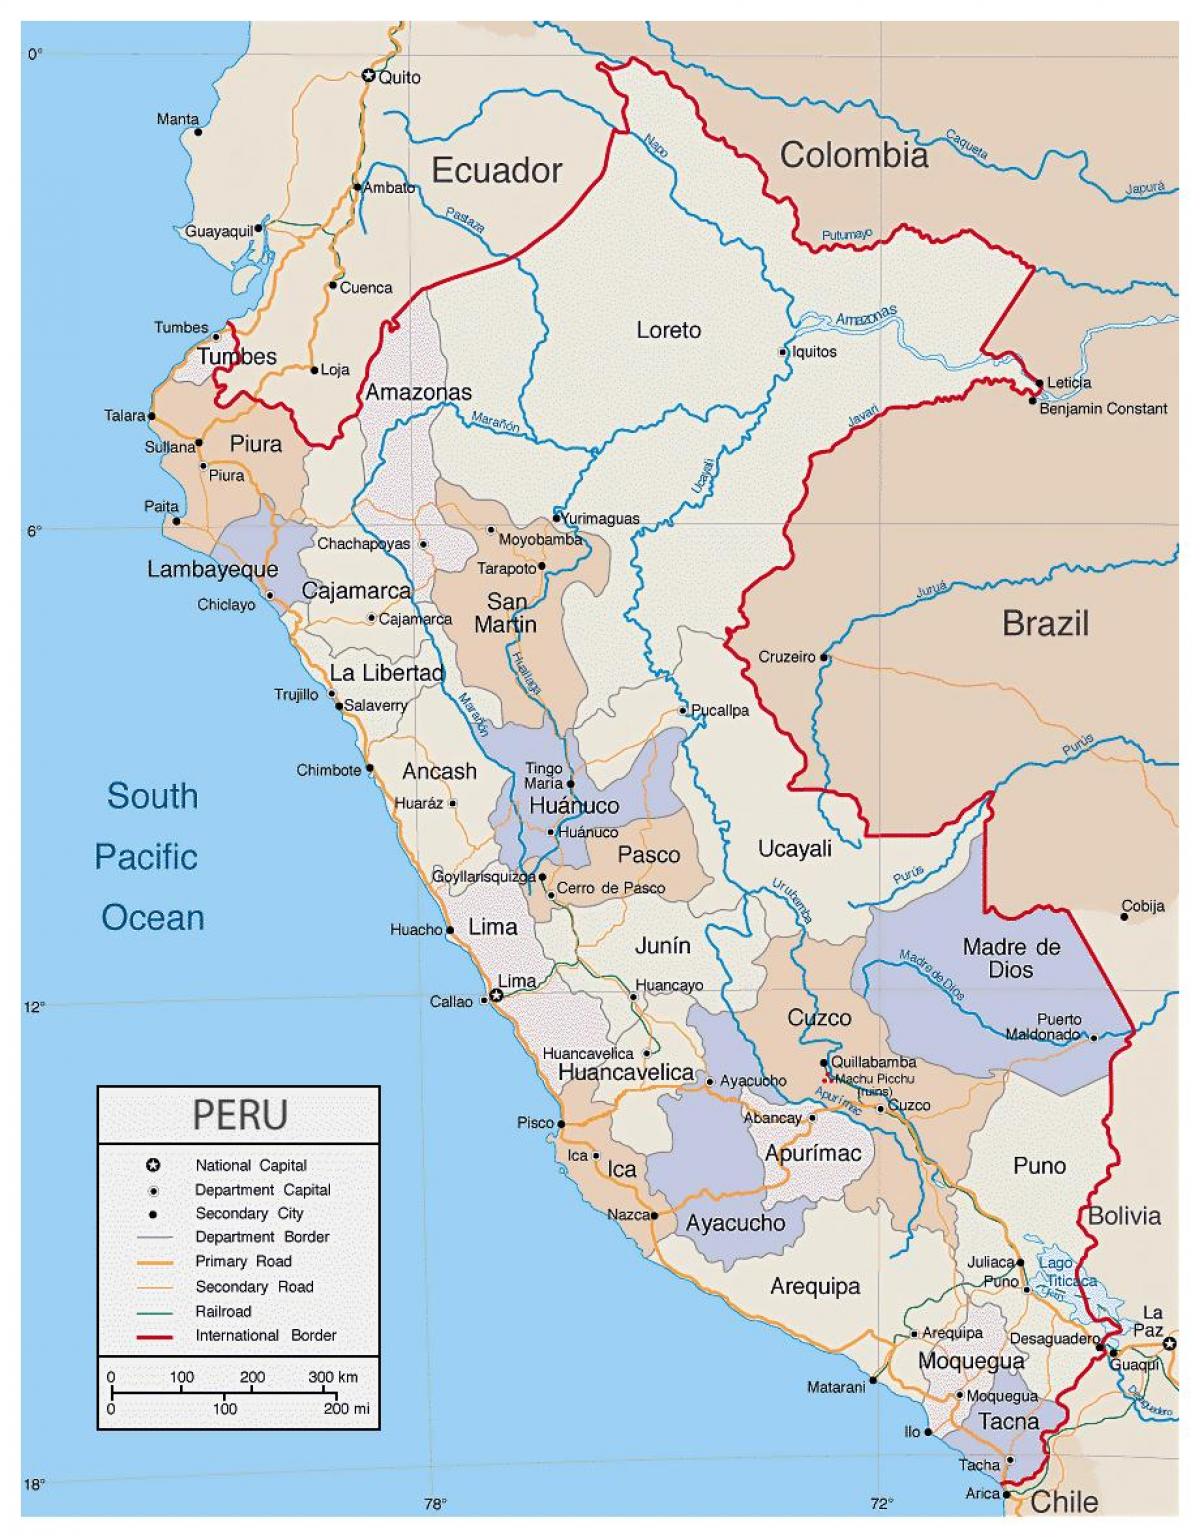 kort af nákvæmar kort af Perú